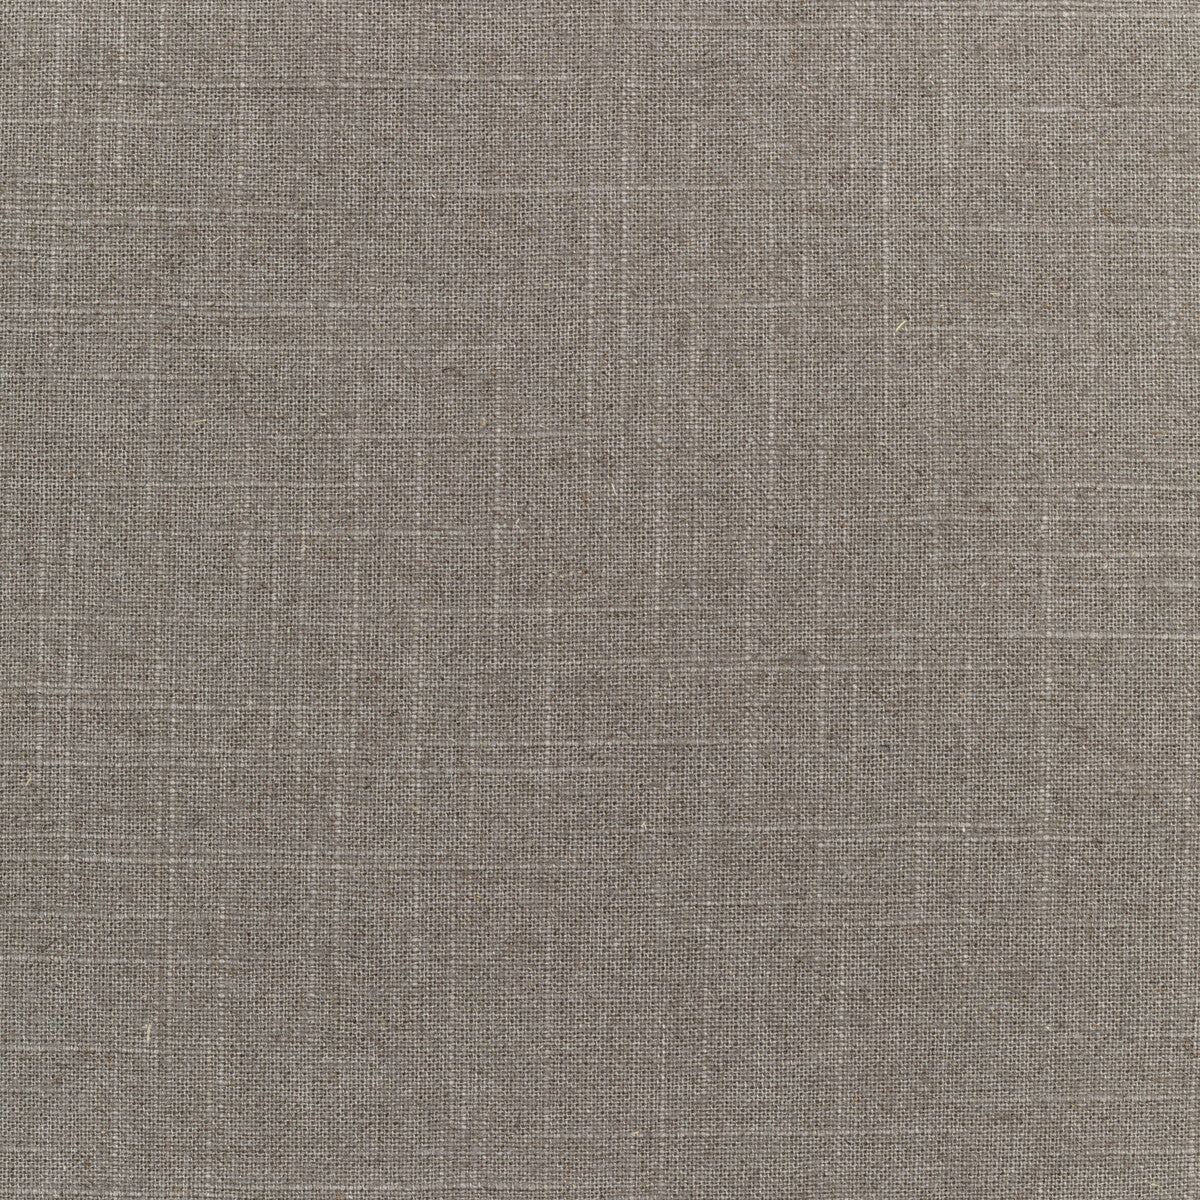 Kravet Basics fabric in 30808-21 color - pattern 30808.21.0 - by Kravet Basics